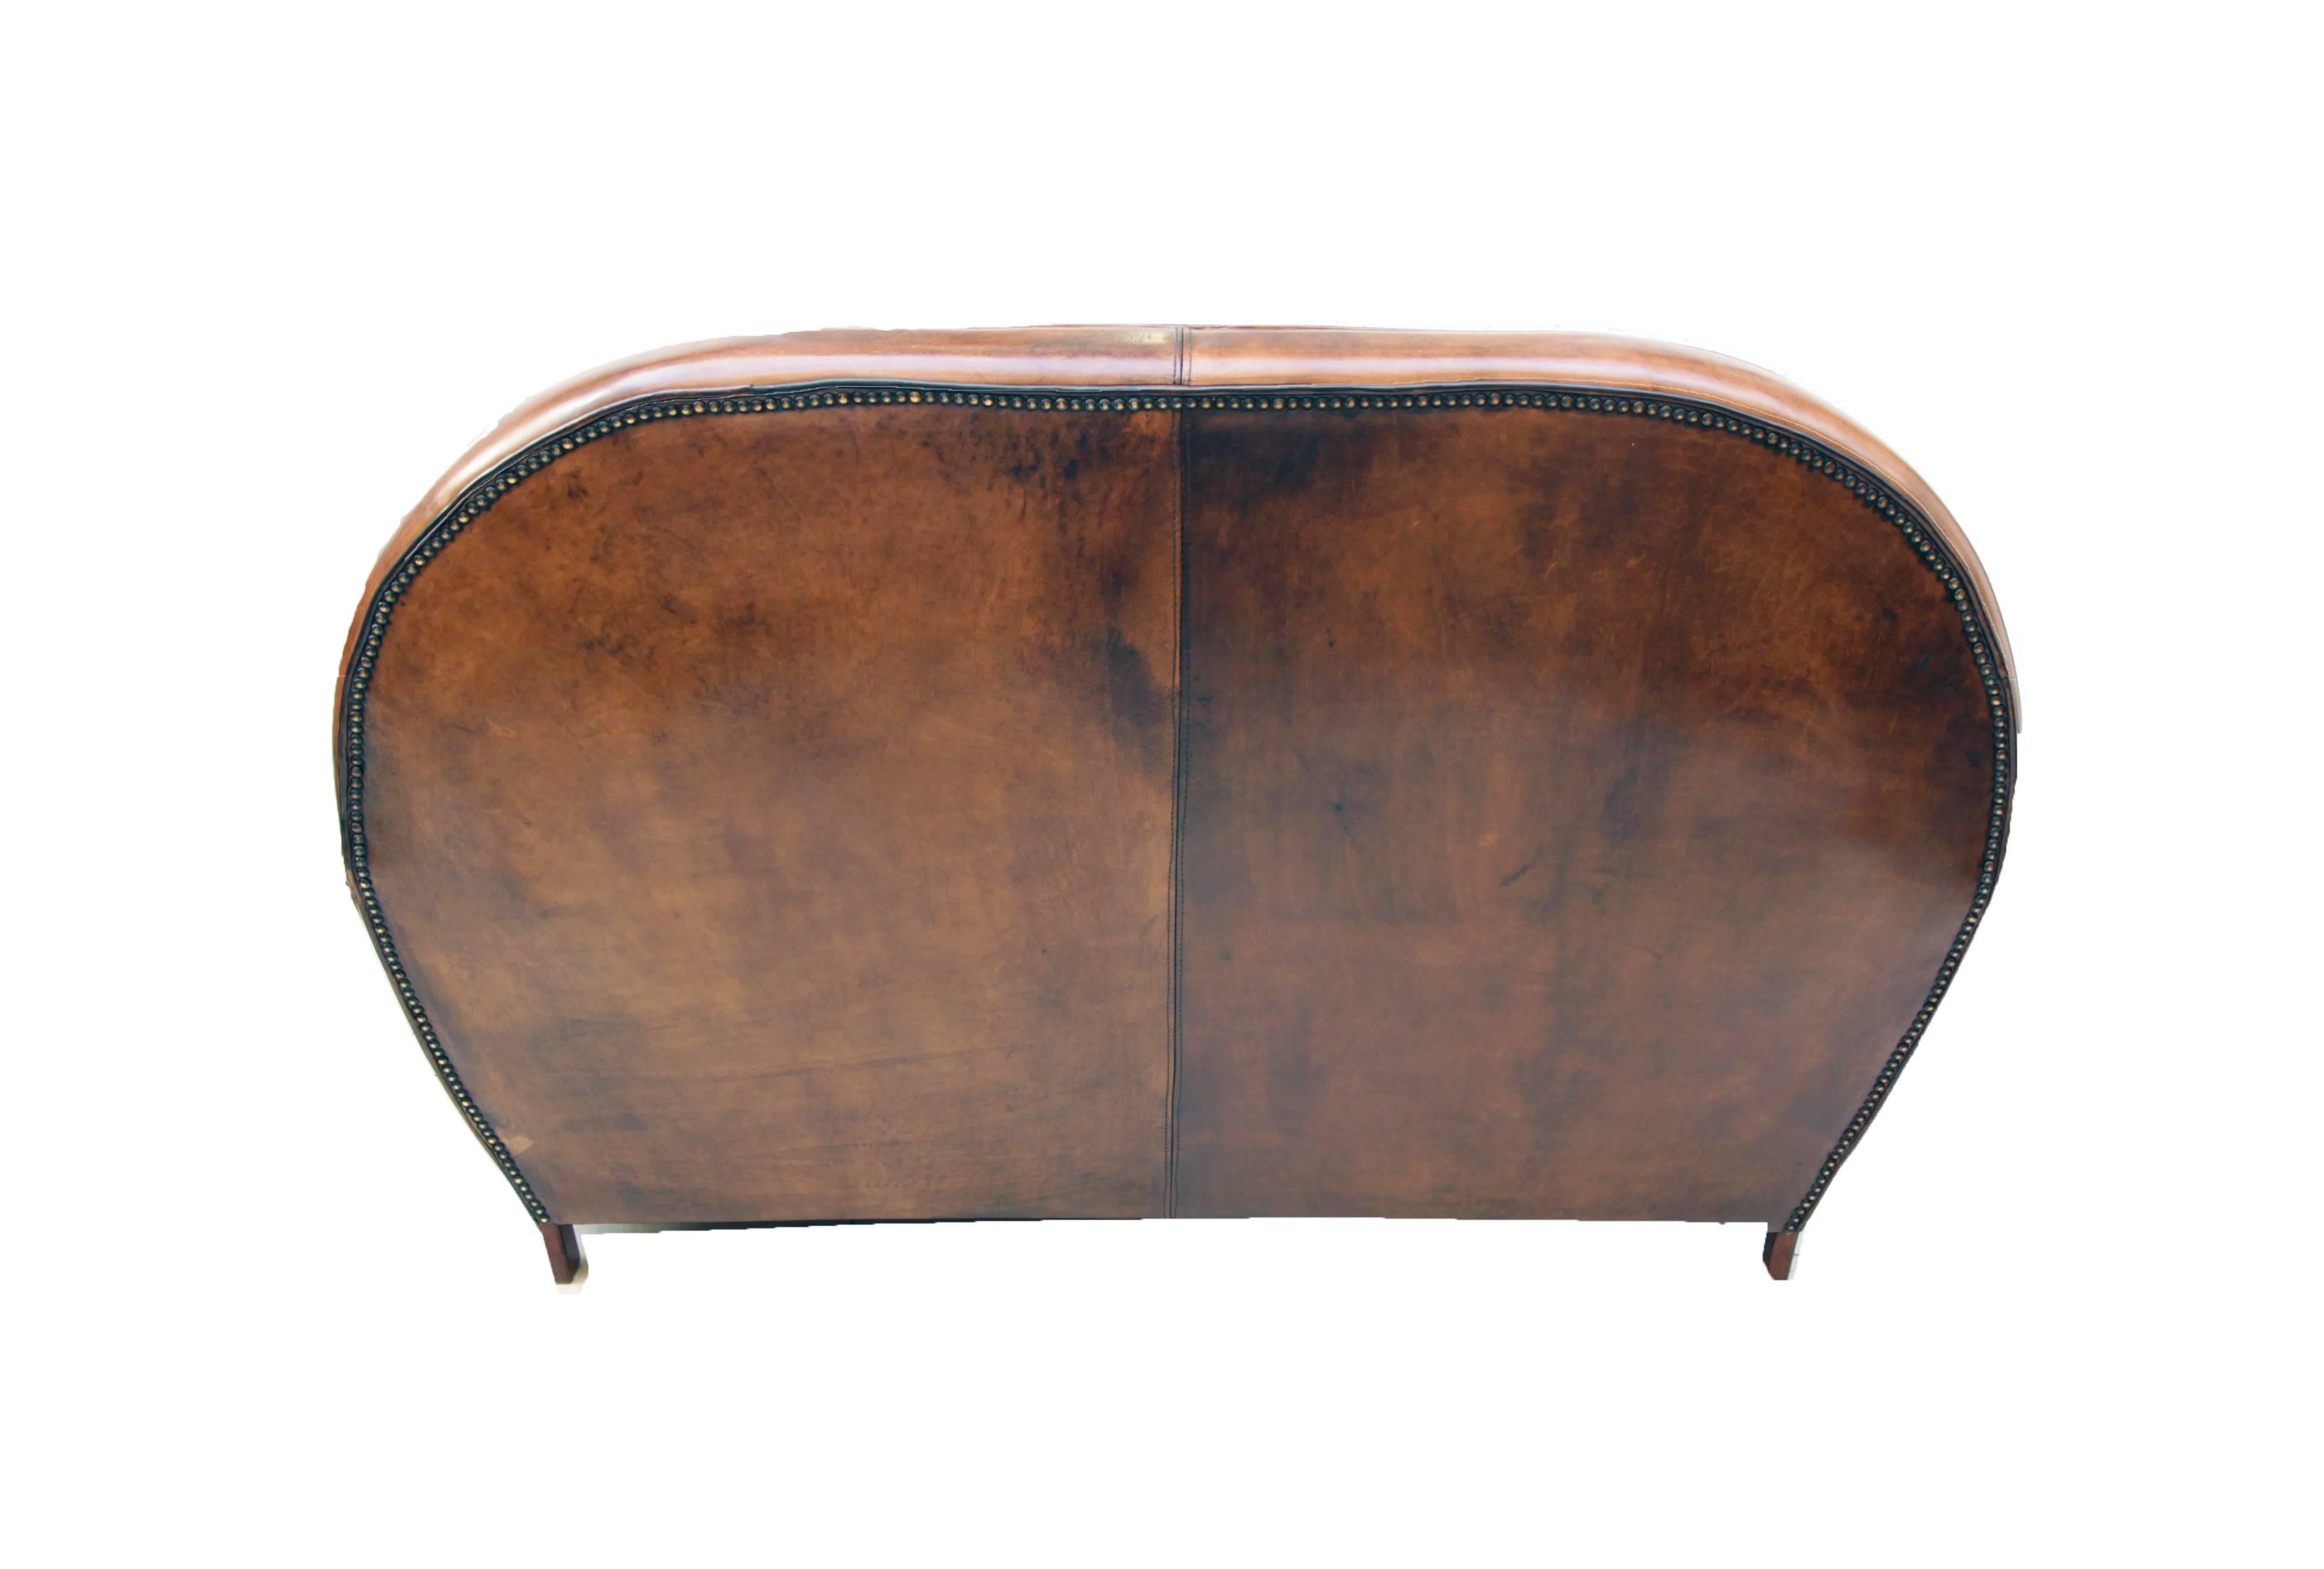 Dieses Clubsofa ist mit handpatiniertem Schafsleder bezogen. Die Couch hat eine sehr schöne Art Deco Form. Das Leder ist sehr robust und es ist sehr bequem zu sitzen. 

 